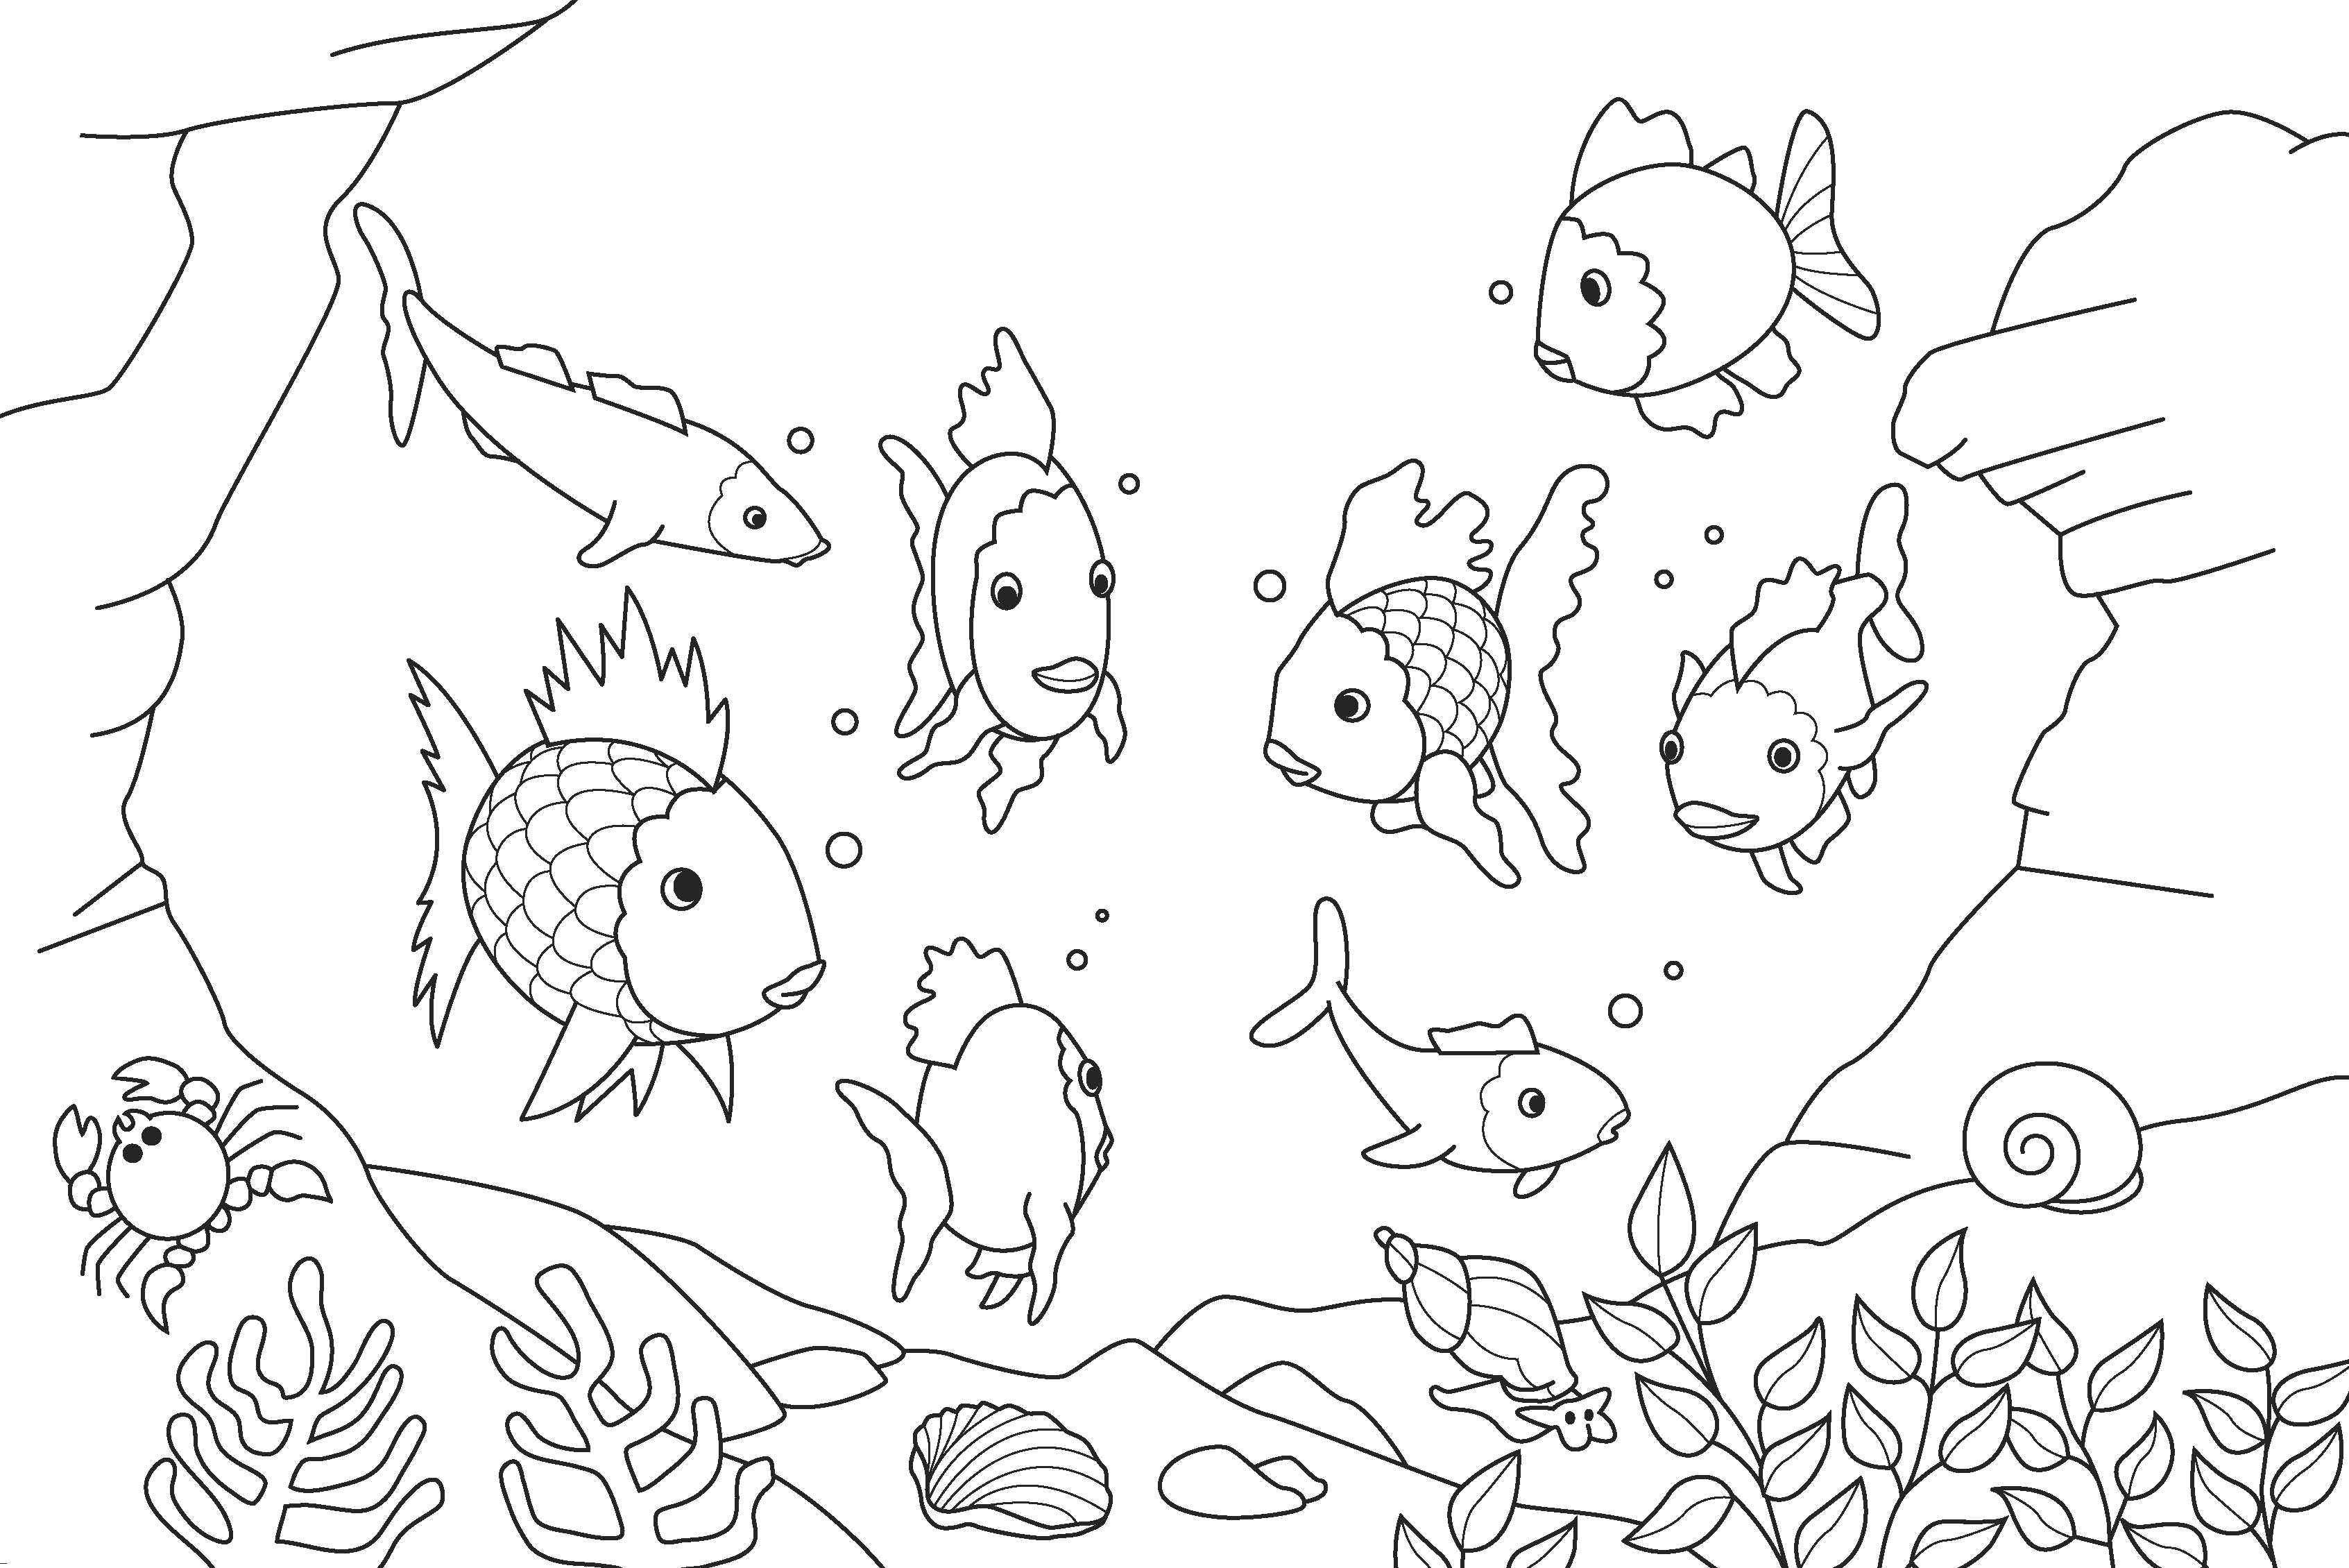 Опис: розмальовки  Різні види риб, що пливуть разом. Категорія: риби. Теги:  Підводний світ, риба.